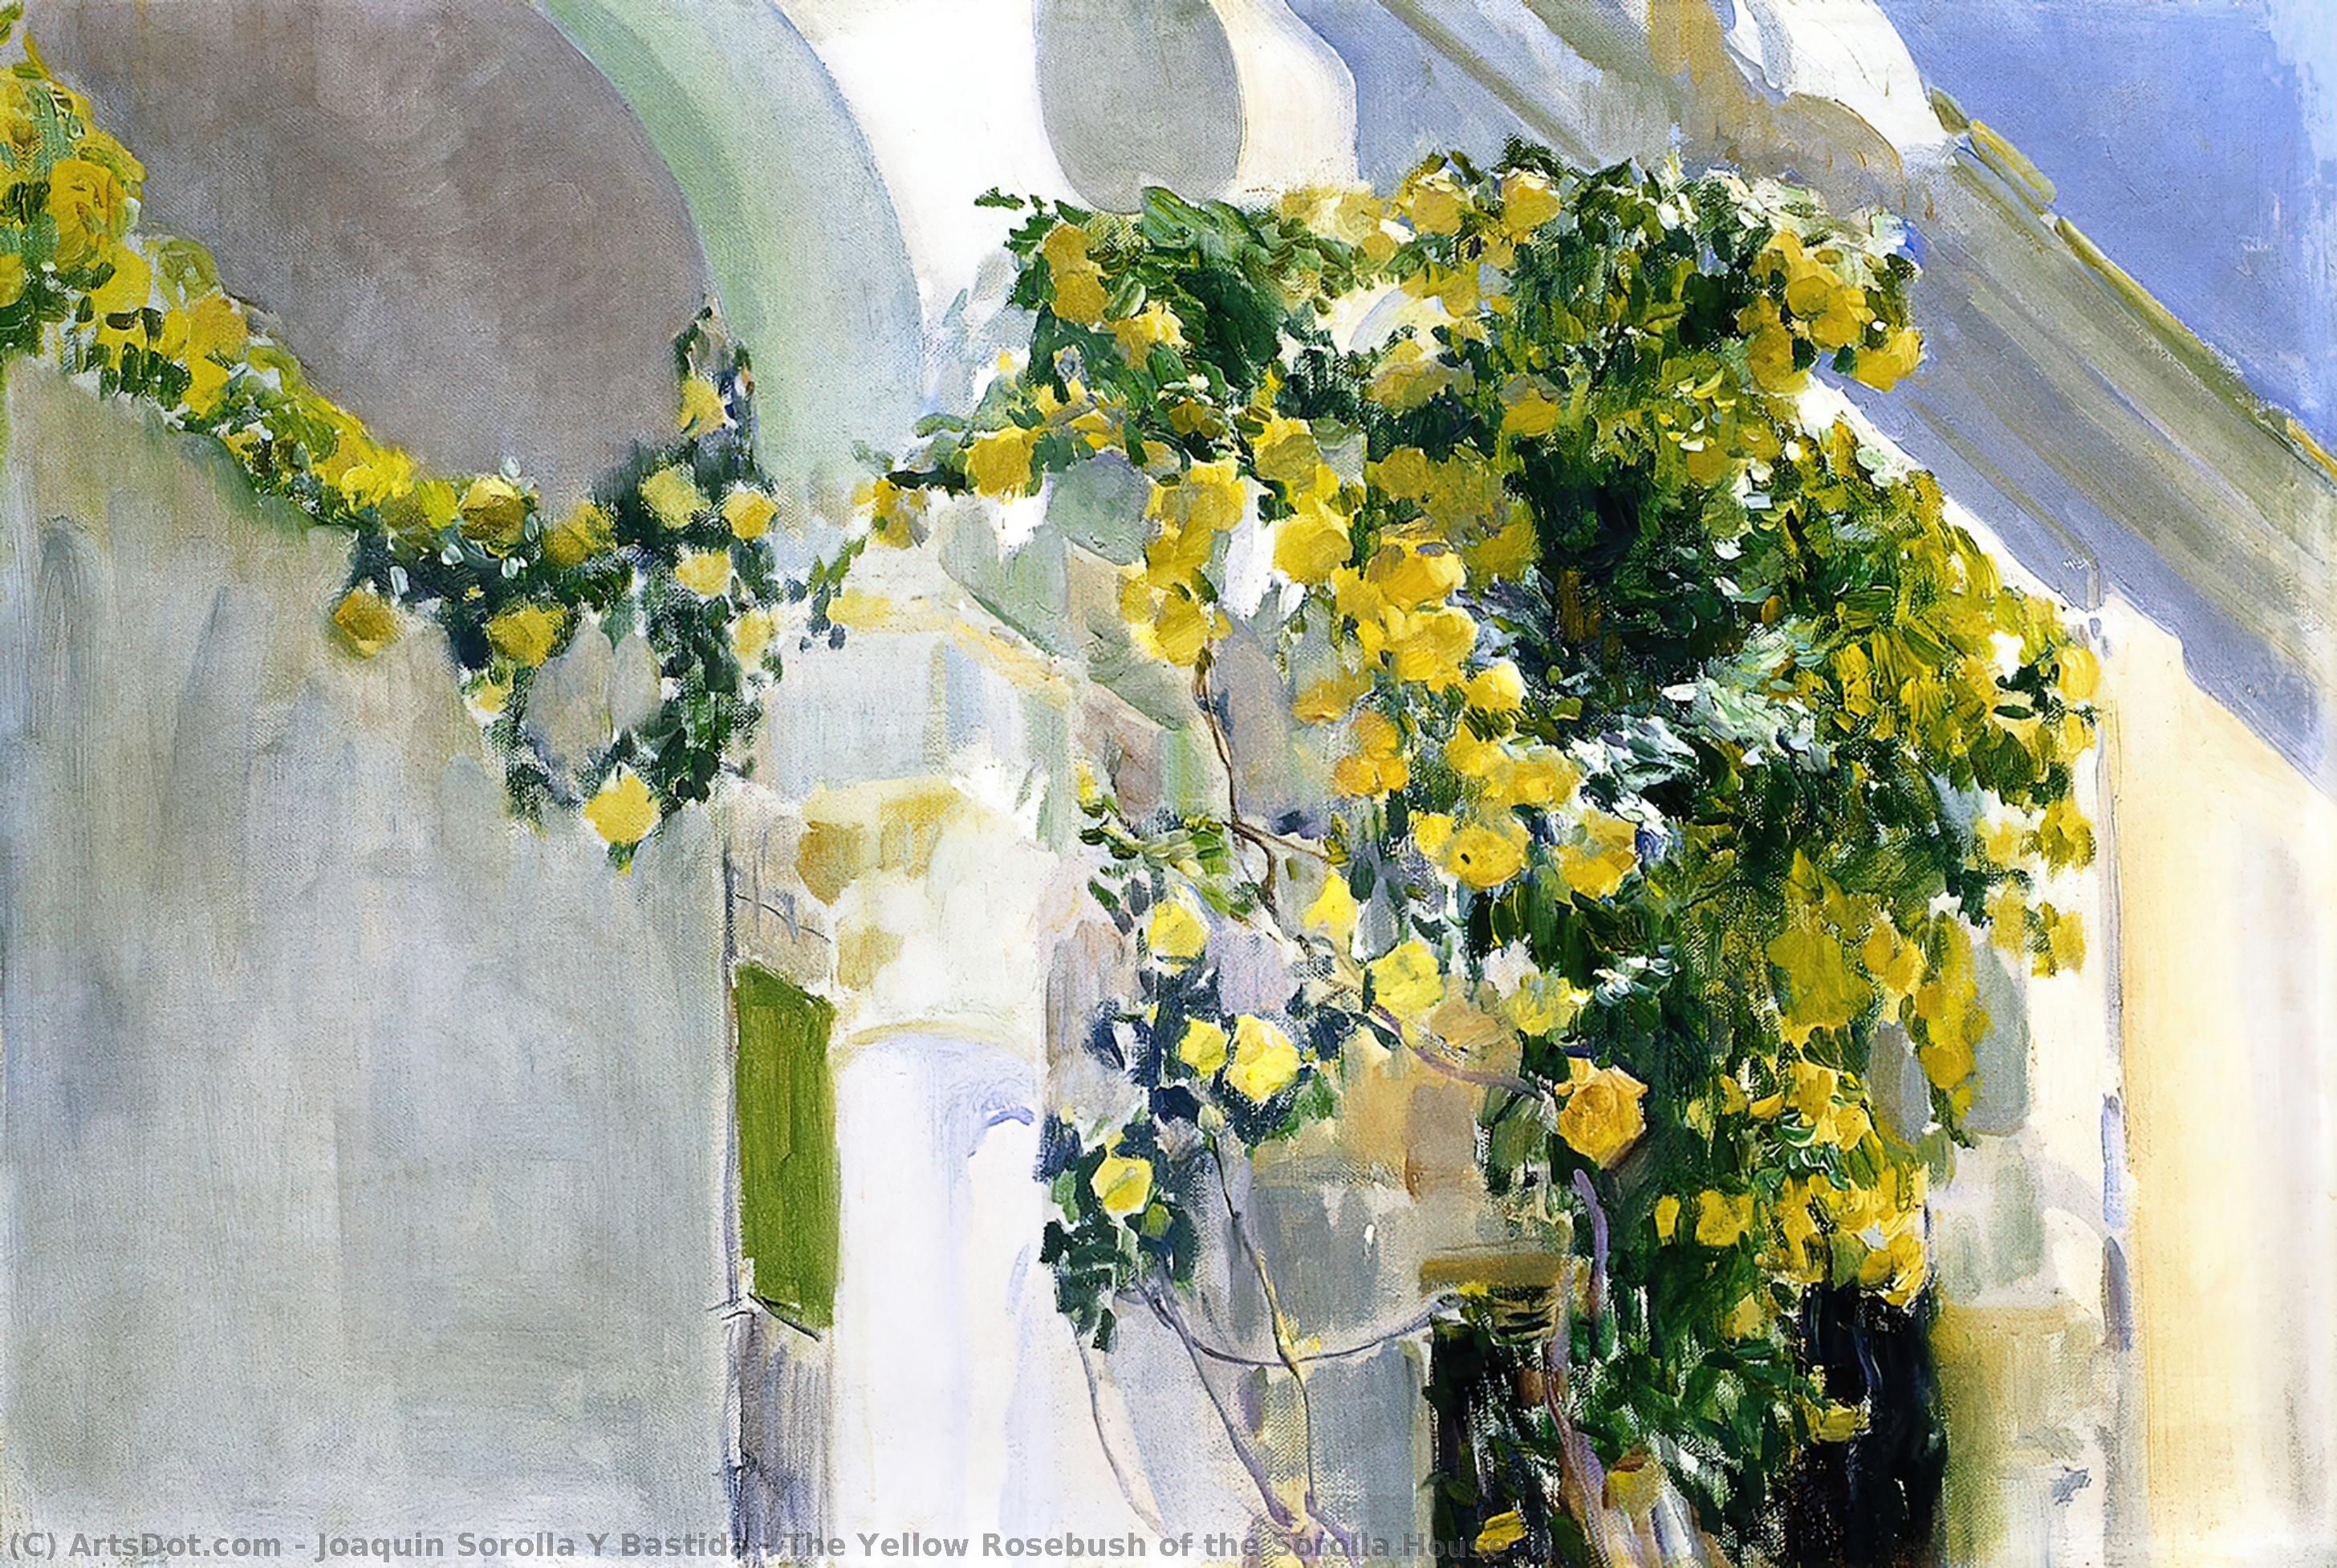 WikiOO.org - אנציקלופדיה לאמנויות יפות - ציור, יצירות אמנות Joaquin Sorolla Y Bastida - The Yellow Rosebush of the Sorolla House